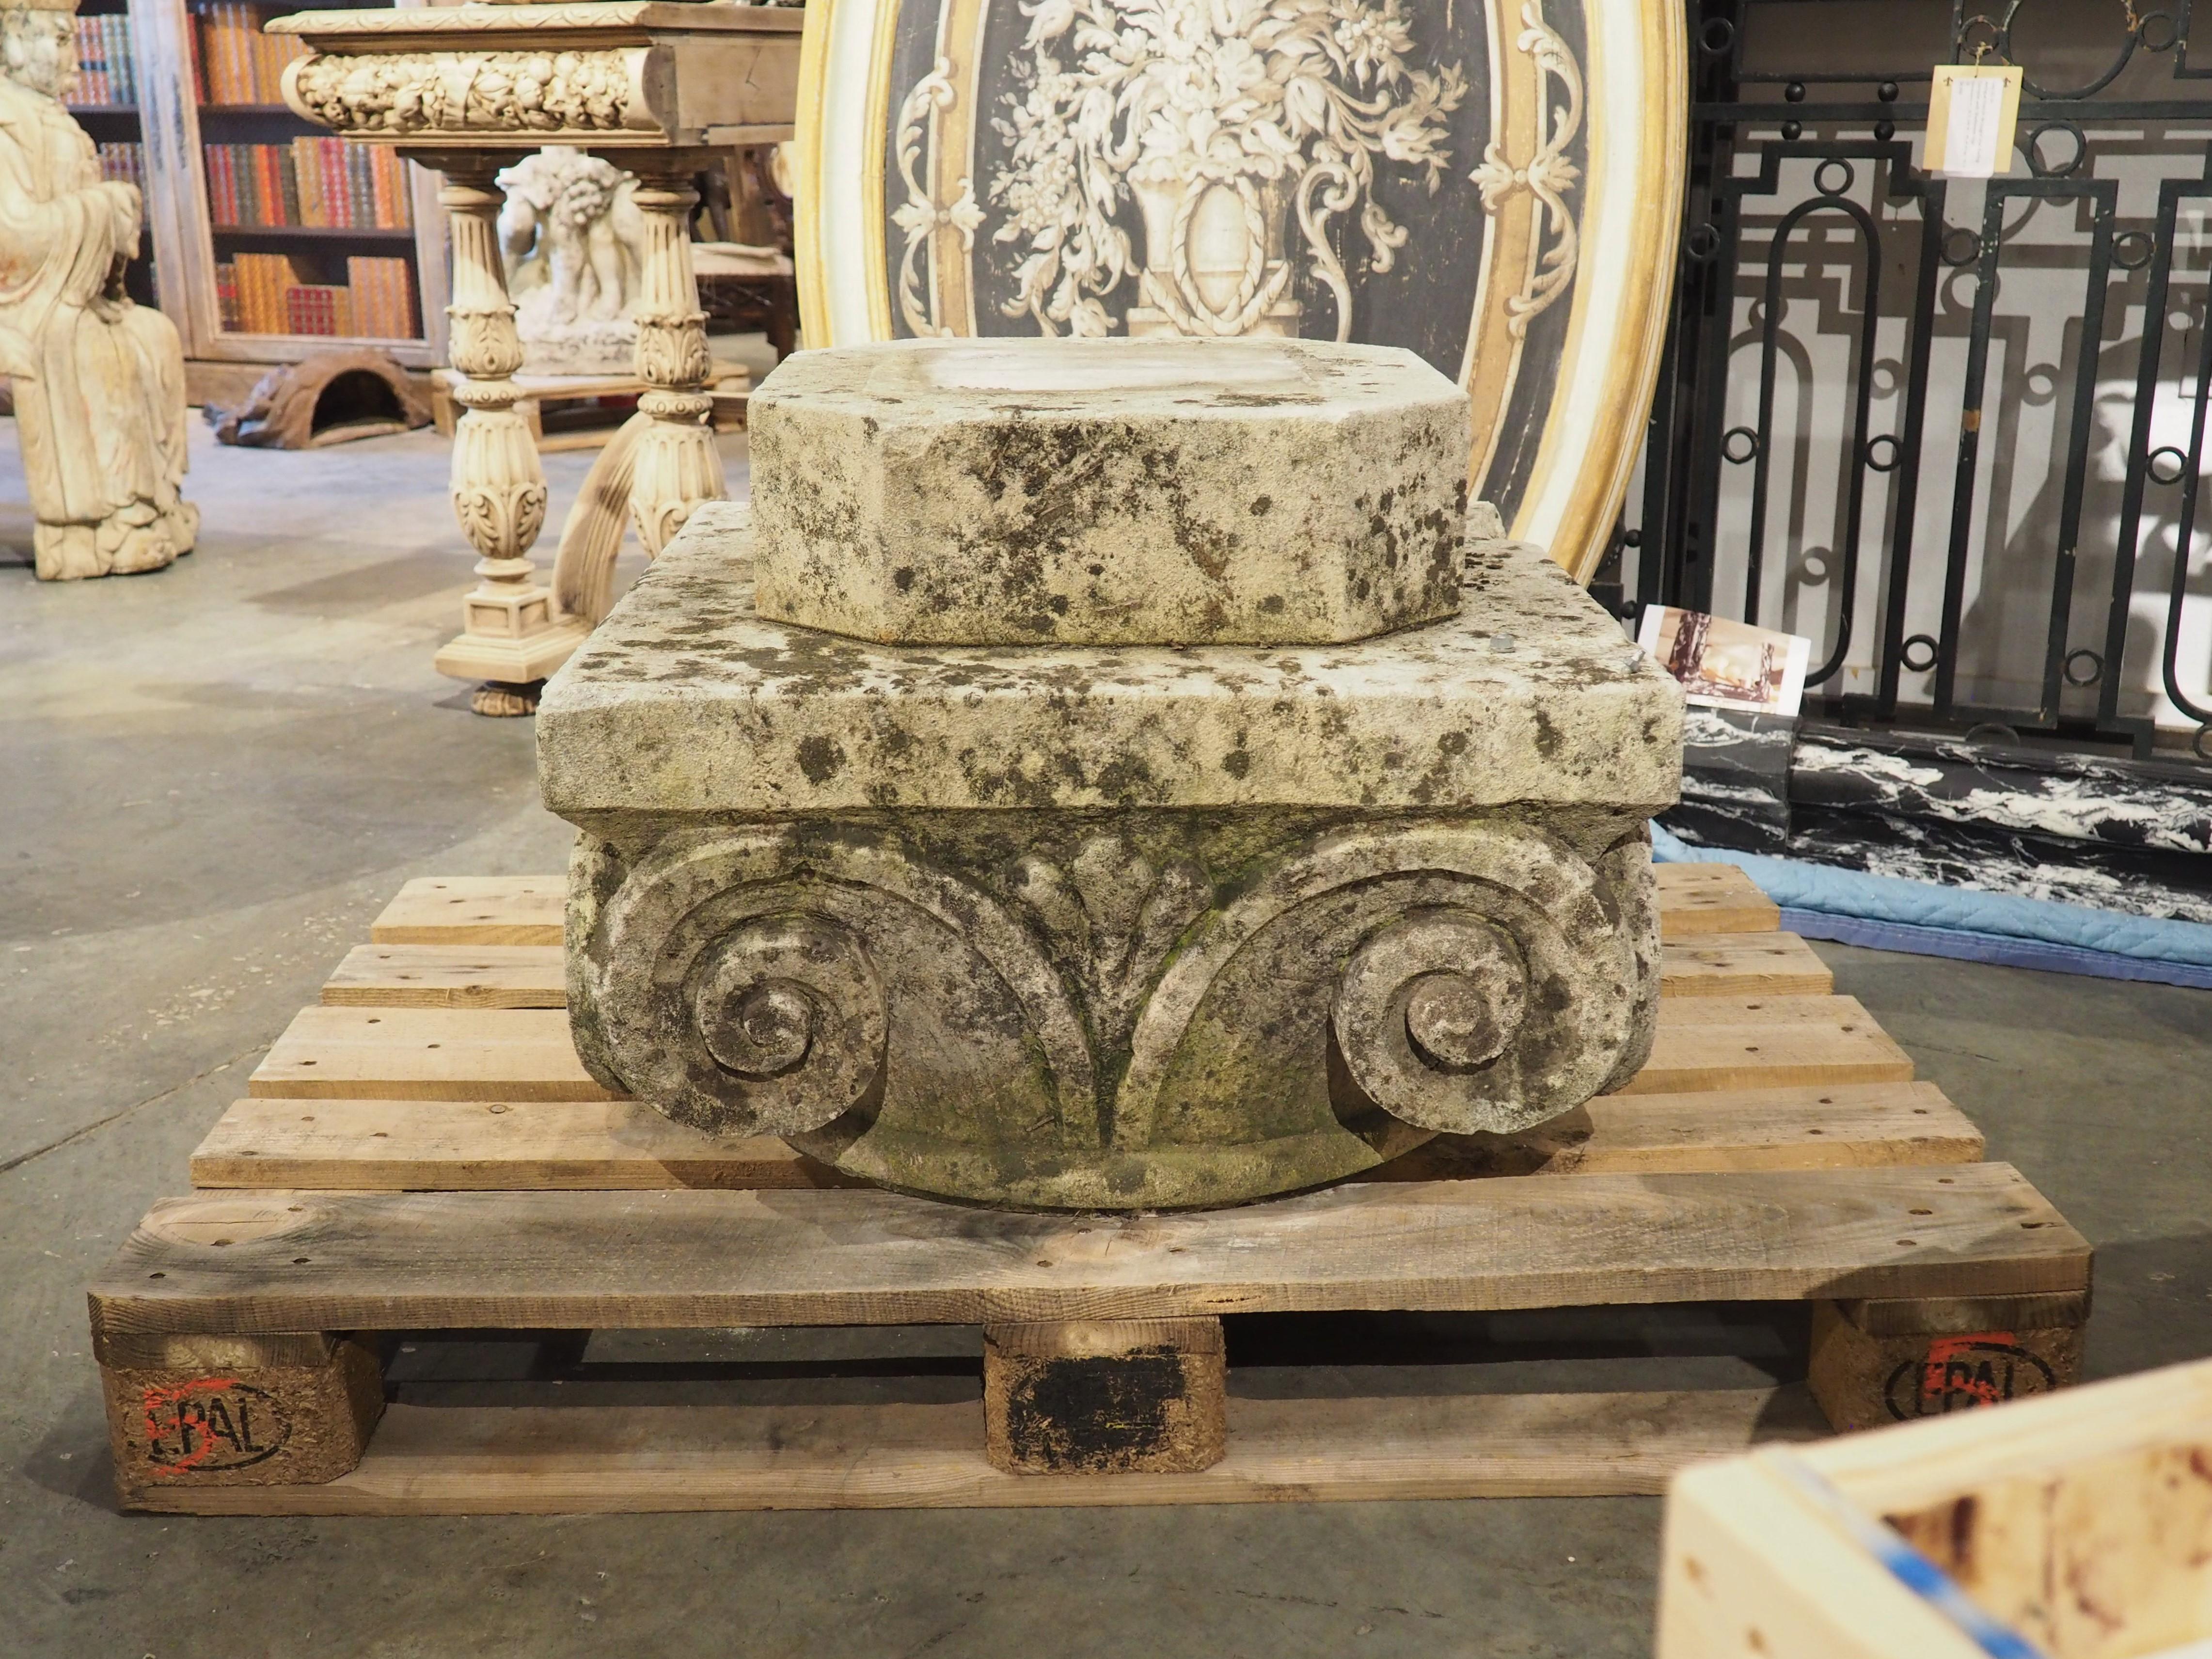 Sculpté à la main en France, vers 1850, ce piédestal en pierre calcaire était très probablement le chapiteau d'une colonne architecturale. Chaque côté est orné de deux volutes étroitement enroulées, indiquant une construction d'ordre ionique. Il